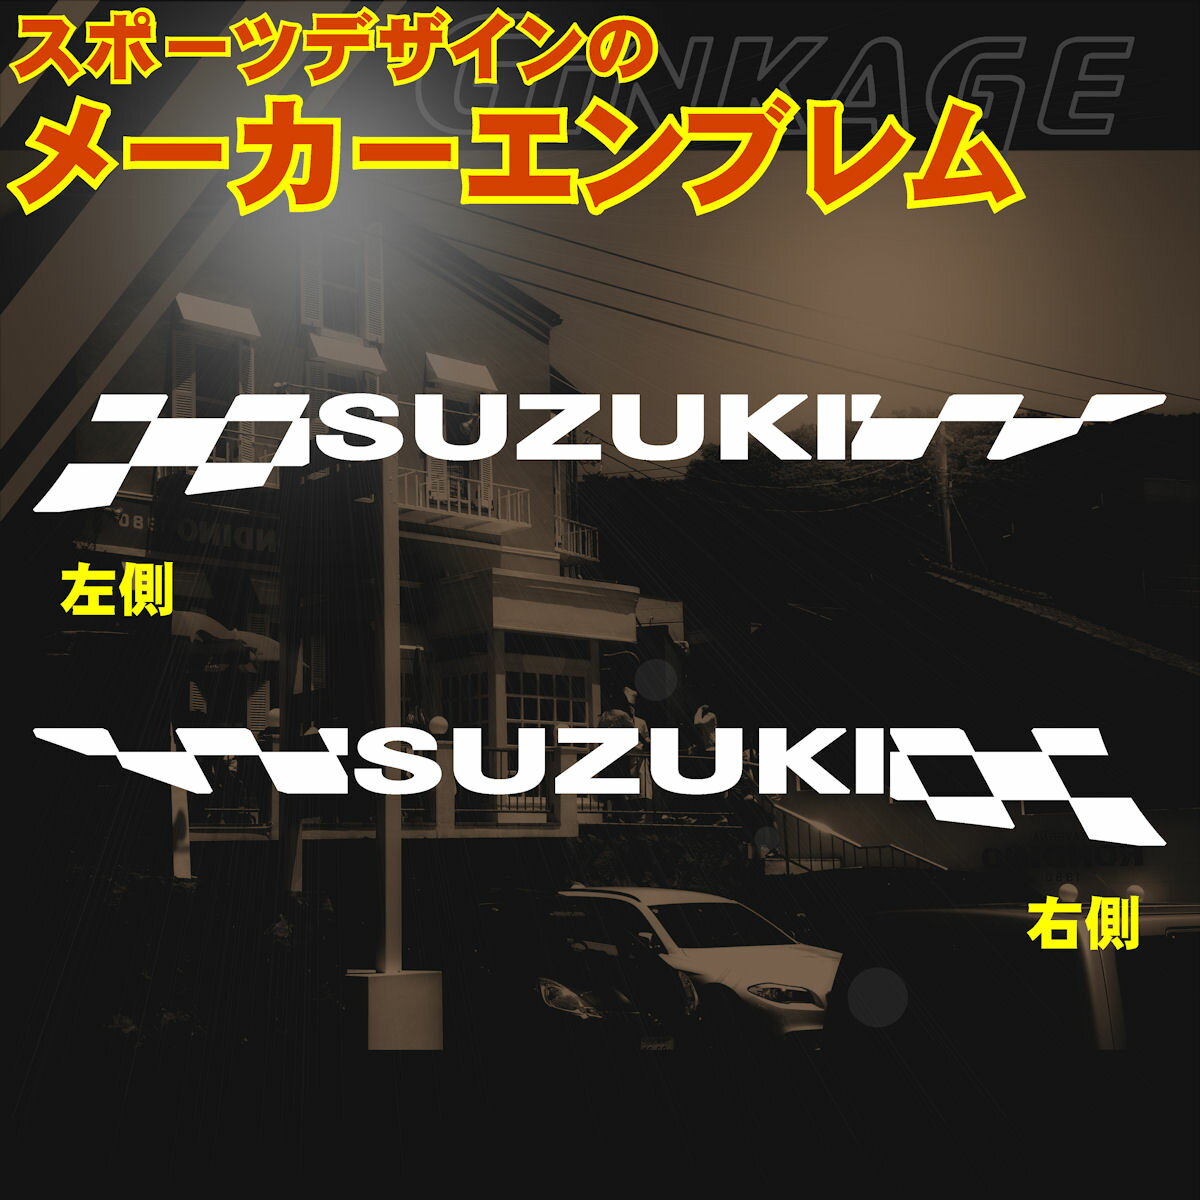 SUZUKI スズキ スポーツ デザイン エンブレム ステッカー